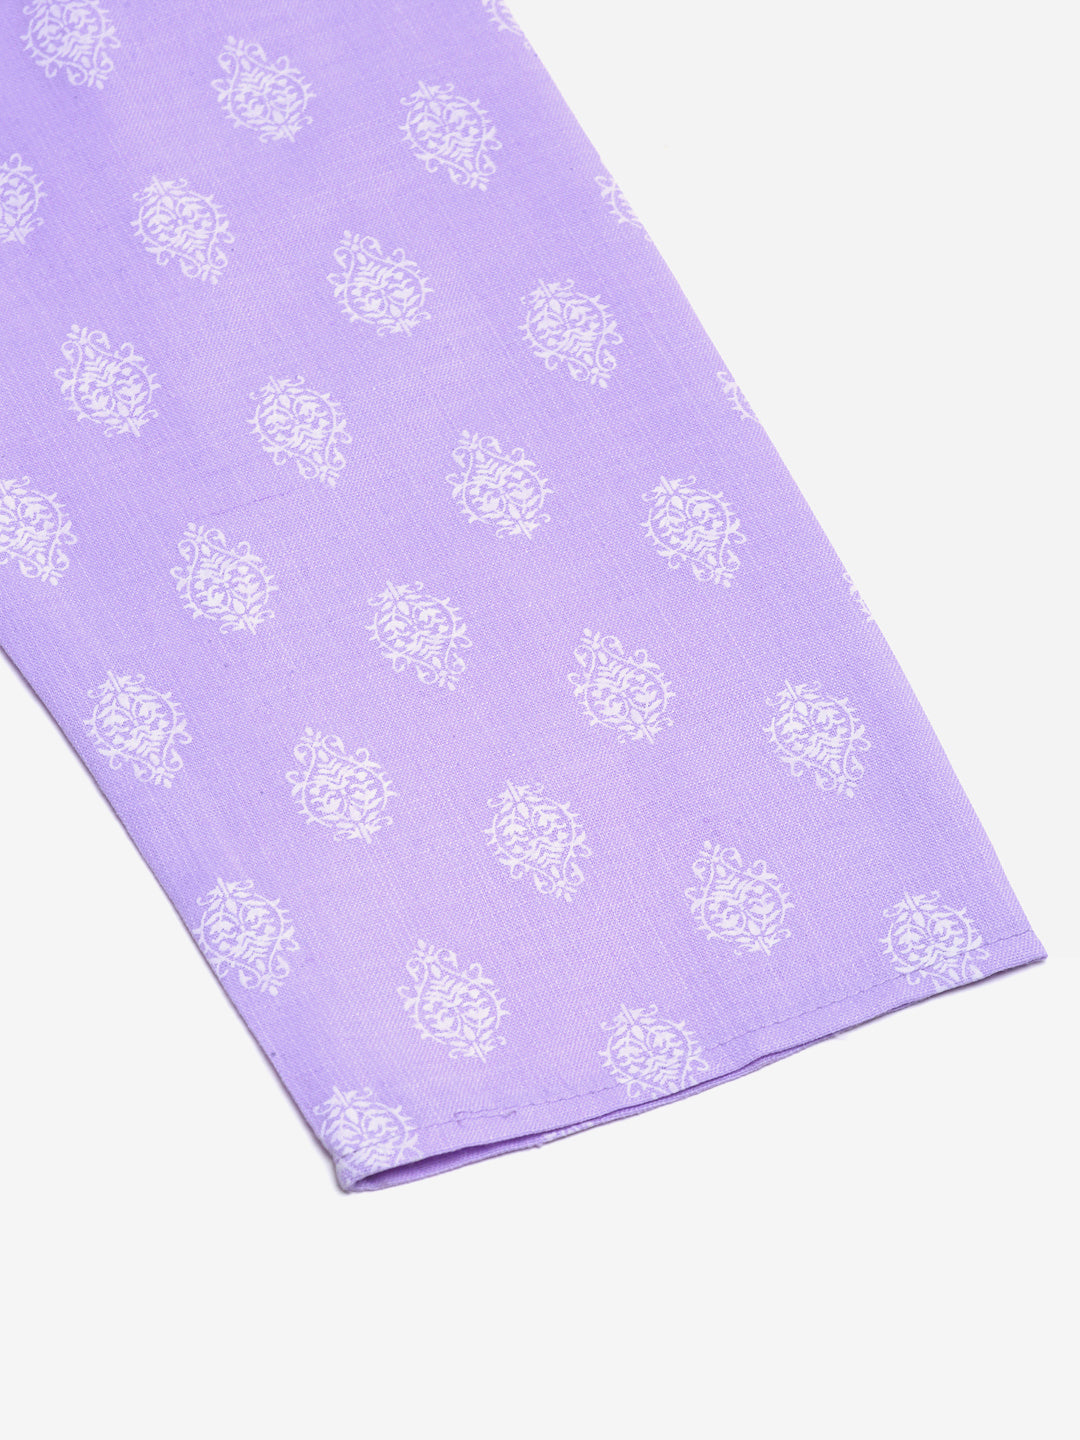 Men's Cotton Floral printed kurta Pyjama Set ( JOKP 650Purple )